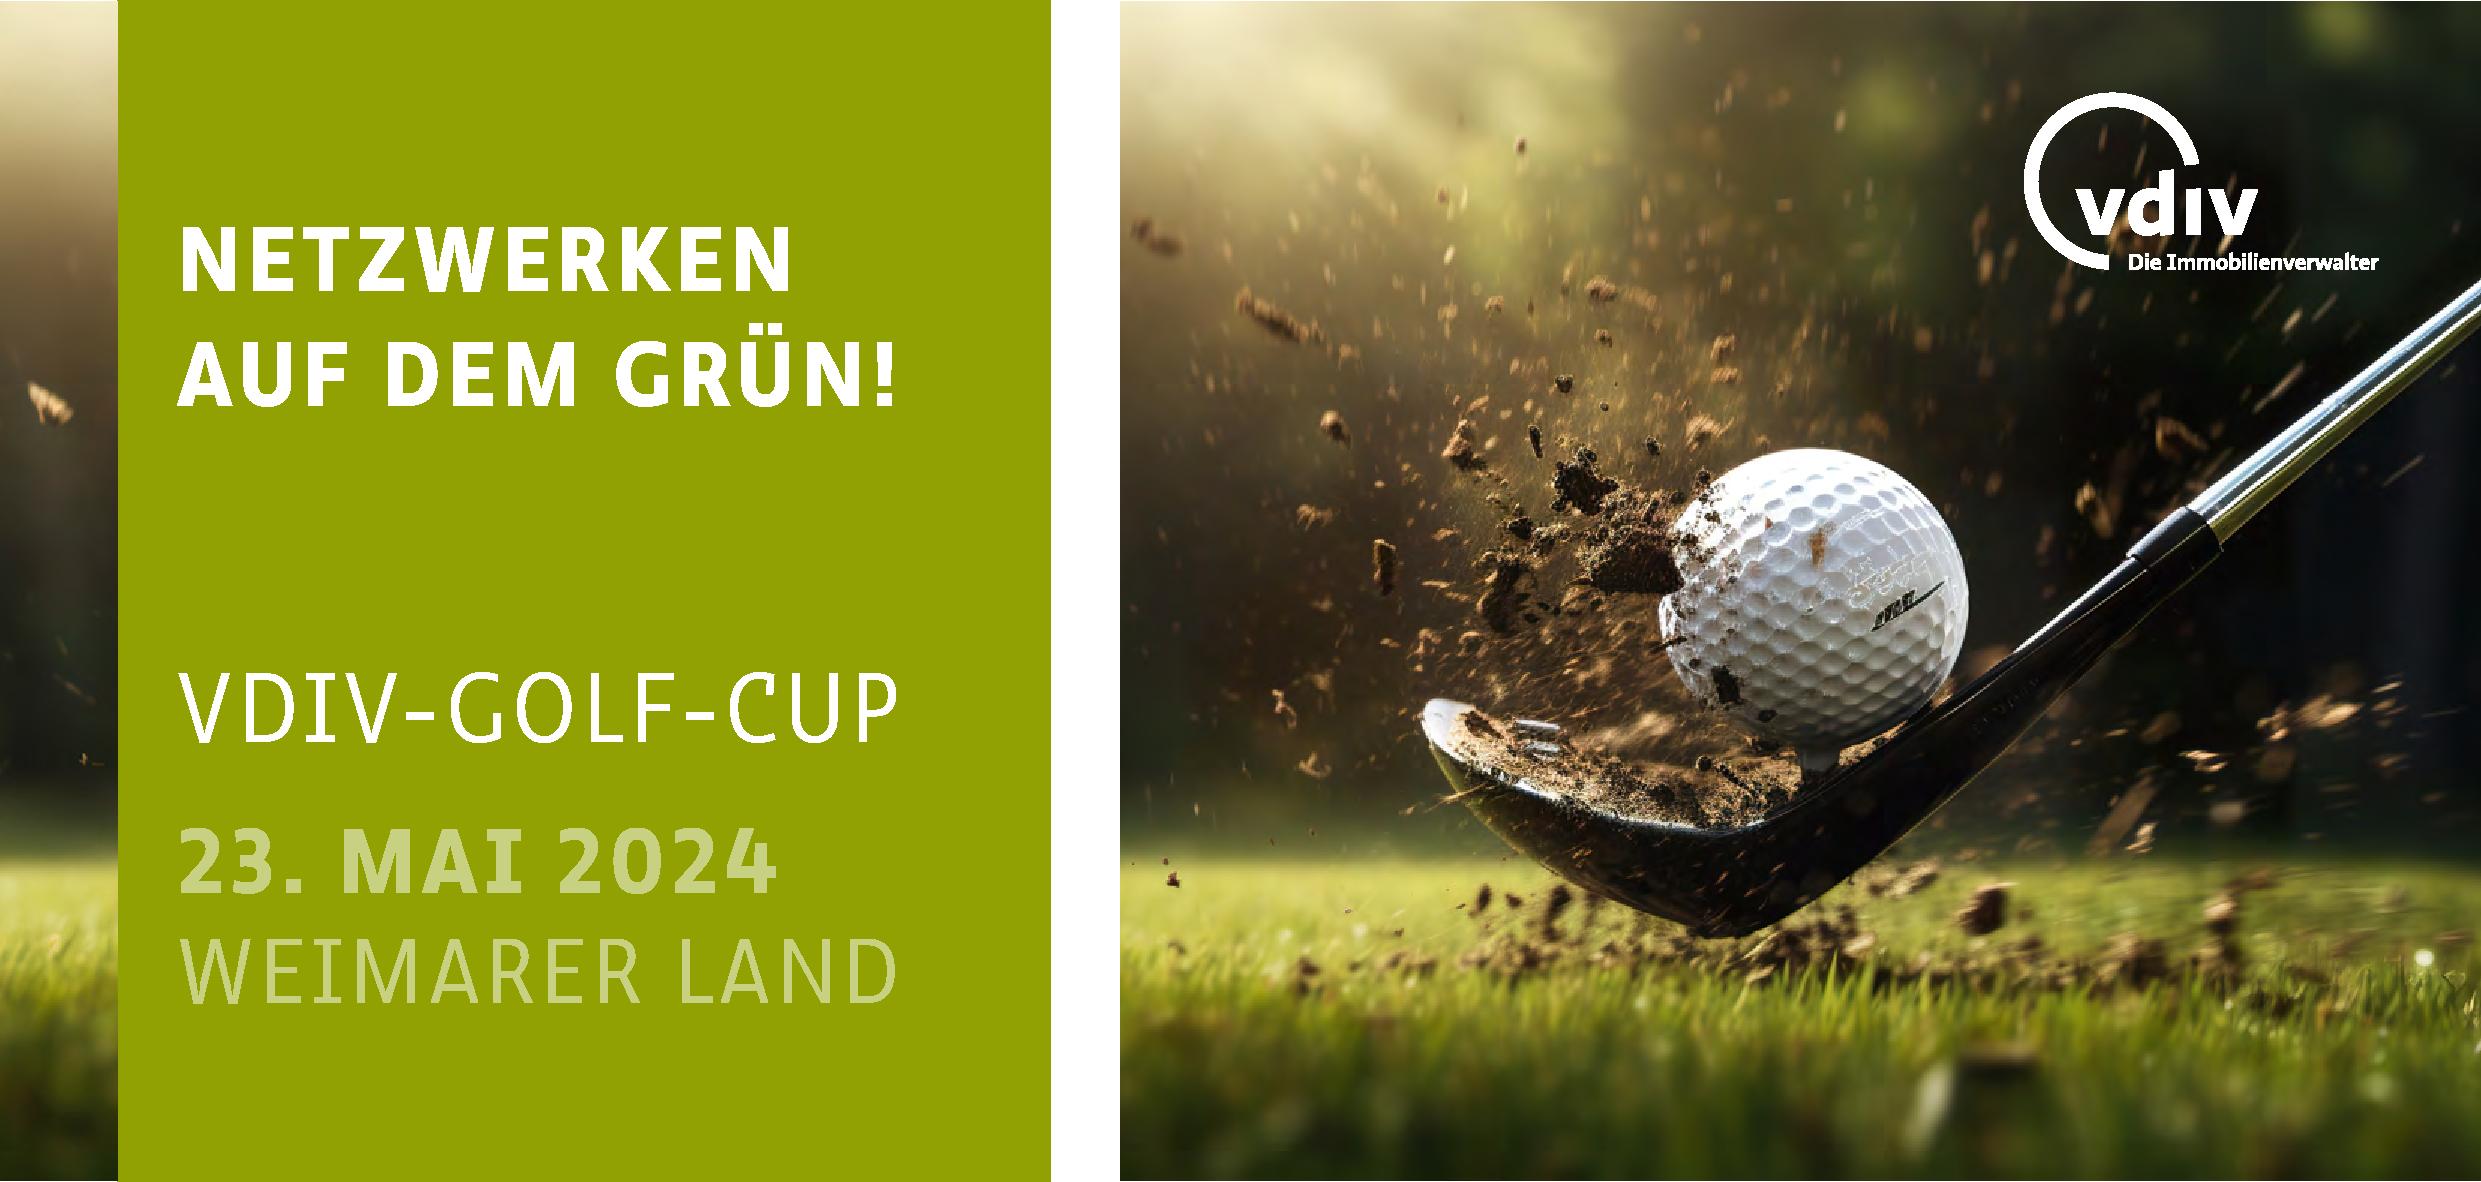 Einladung Golf-Cup Weimarer Land 2024 Netzwerken auf dem Grün!